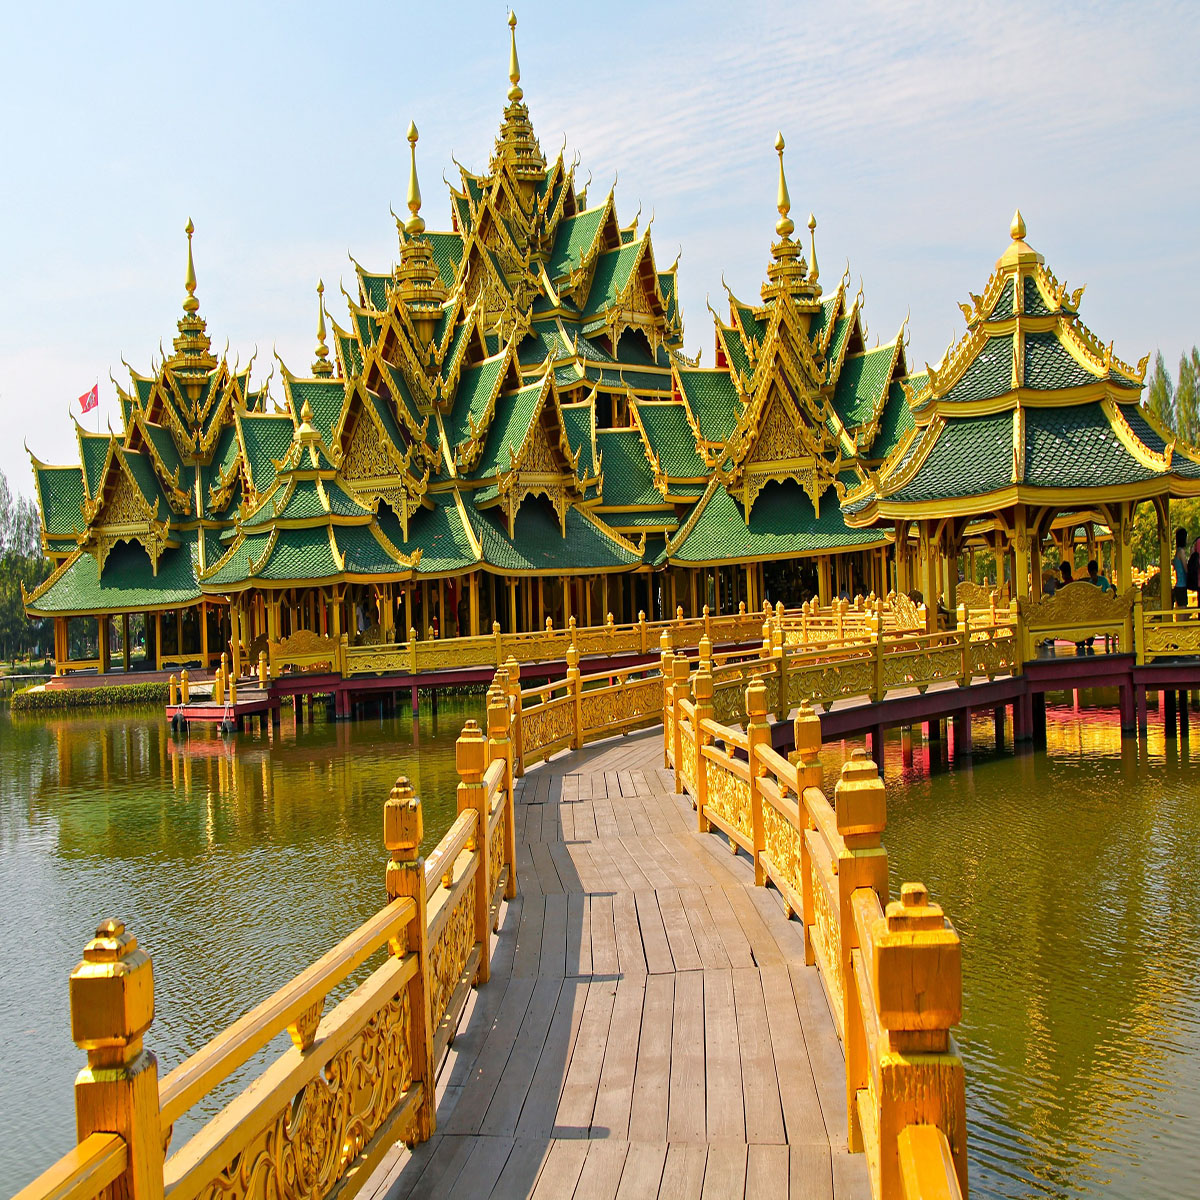 best thailand travel blogs